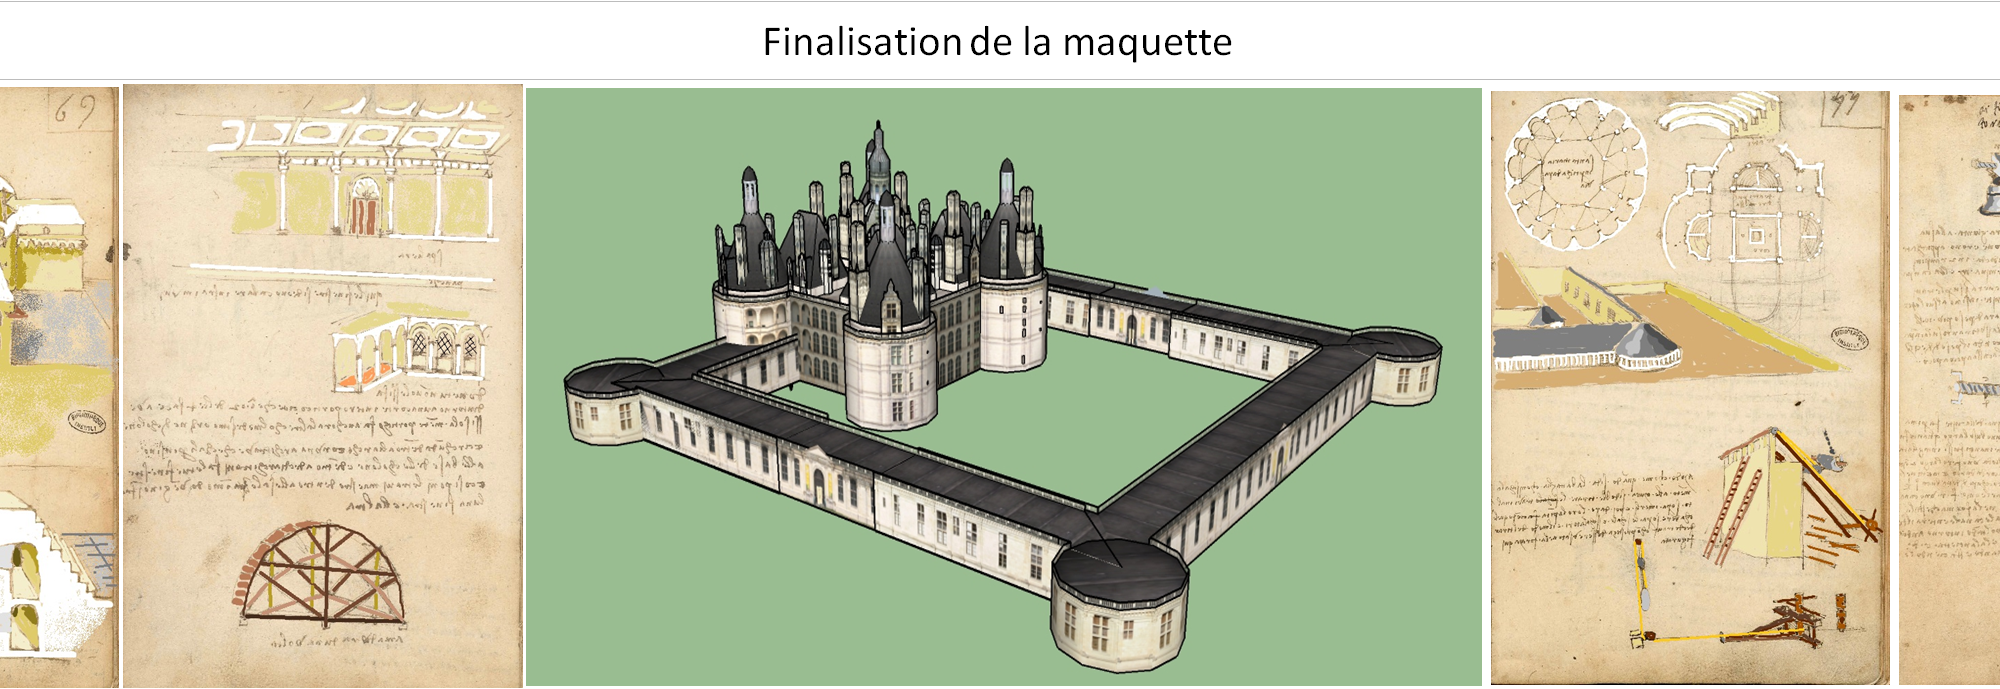 Finalisation de la maquette de Chambord